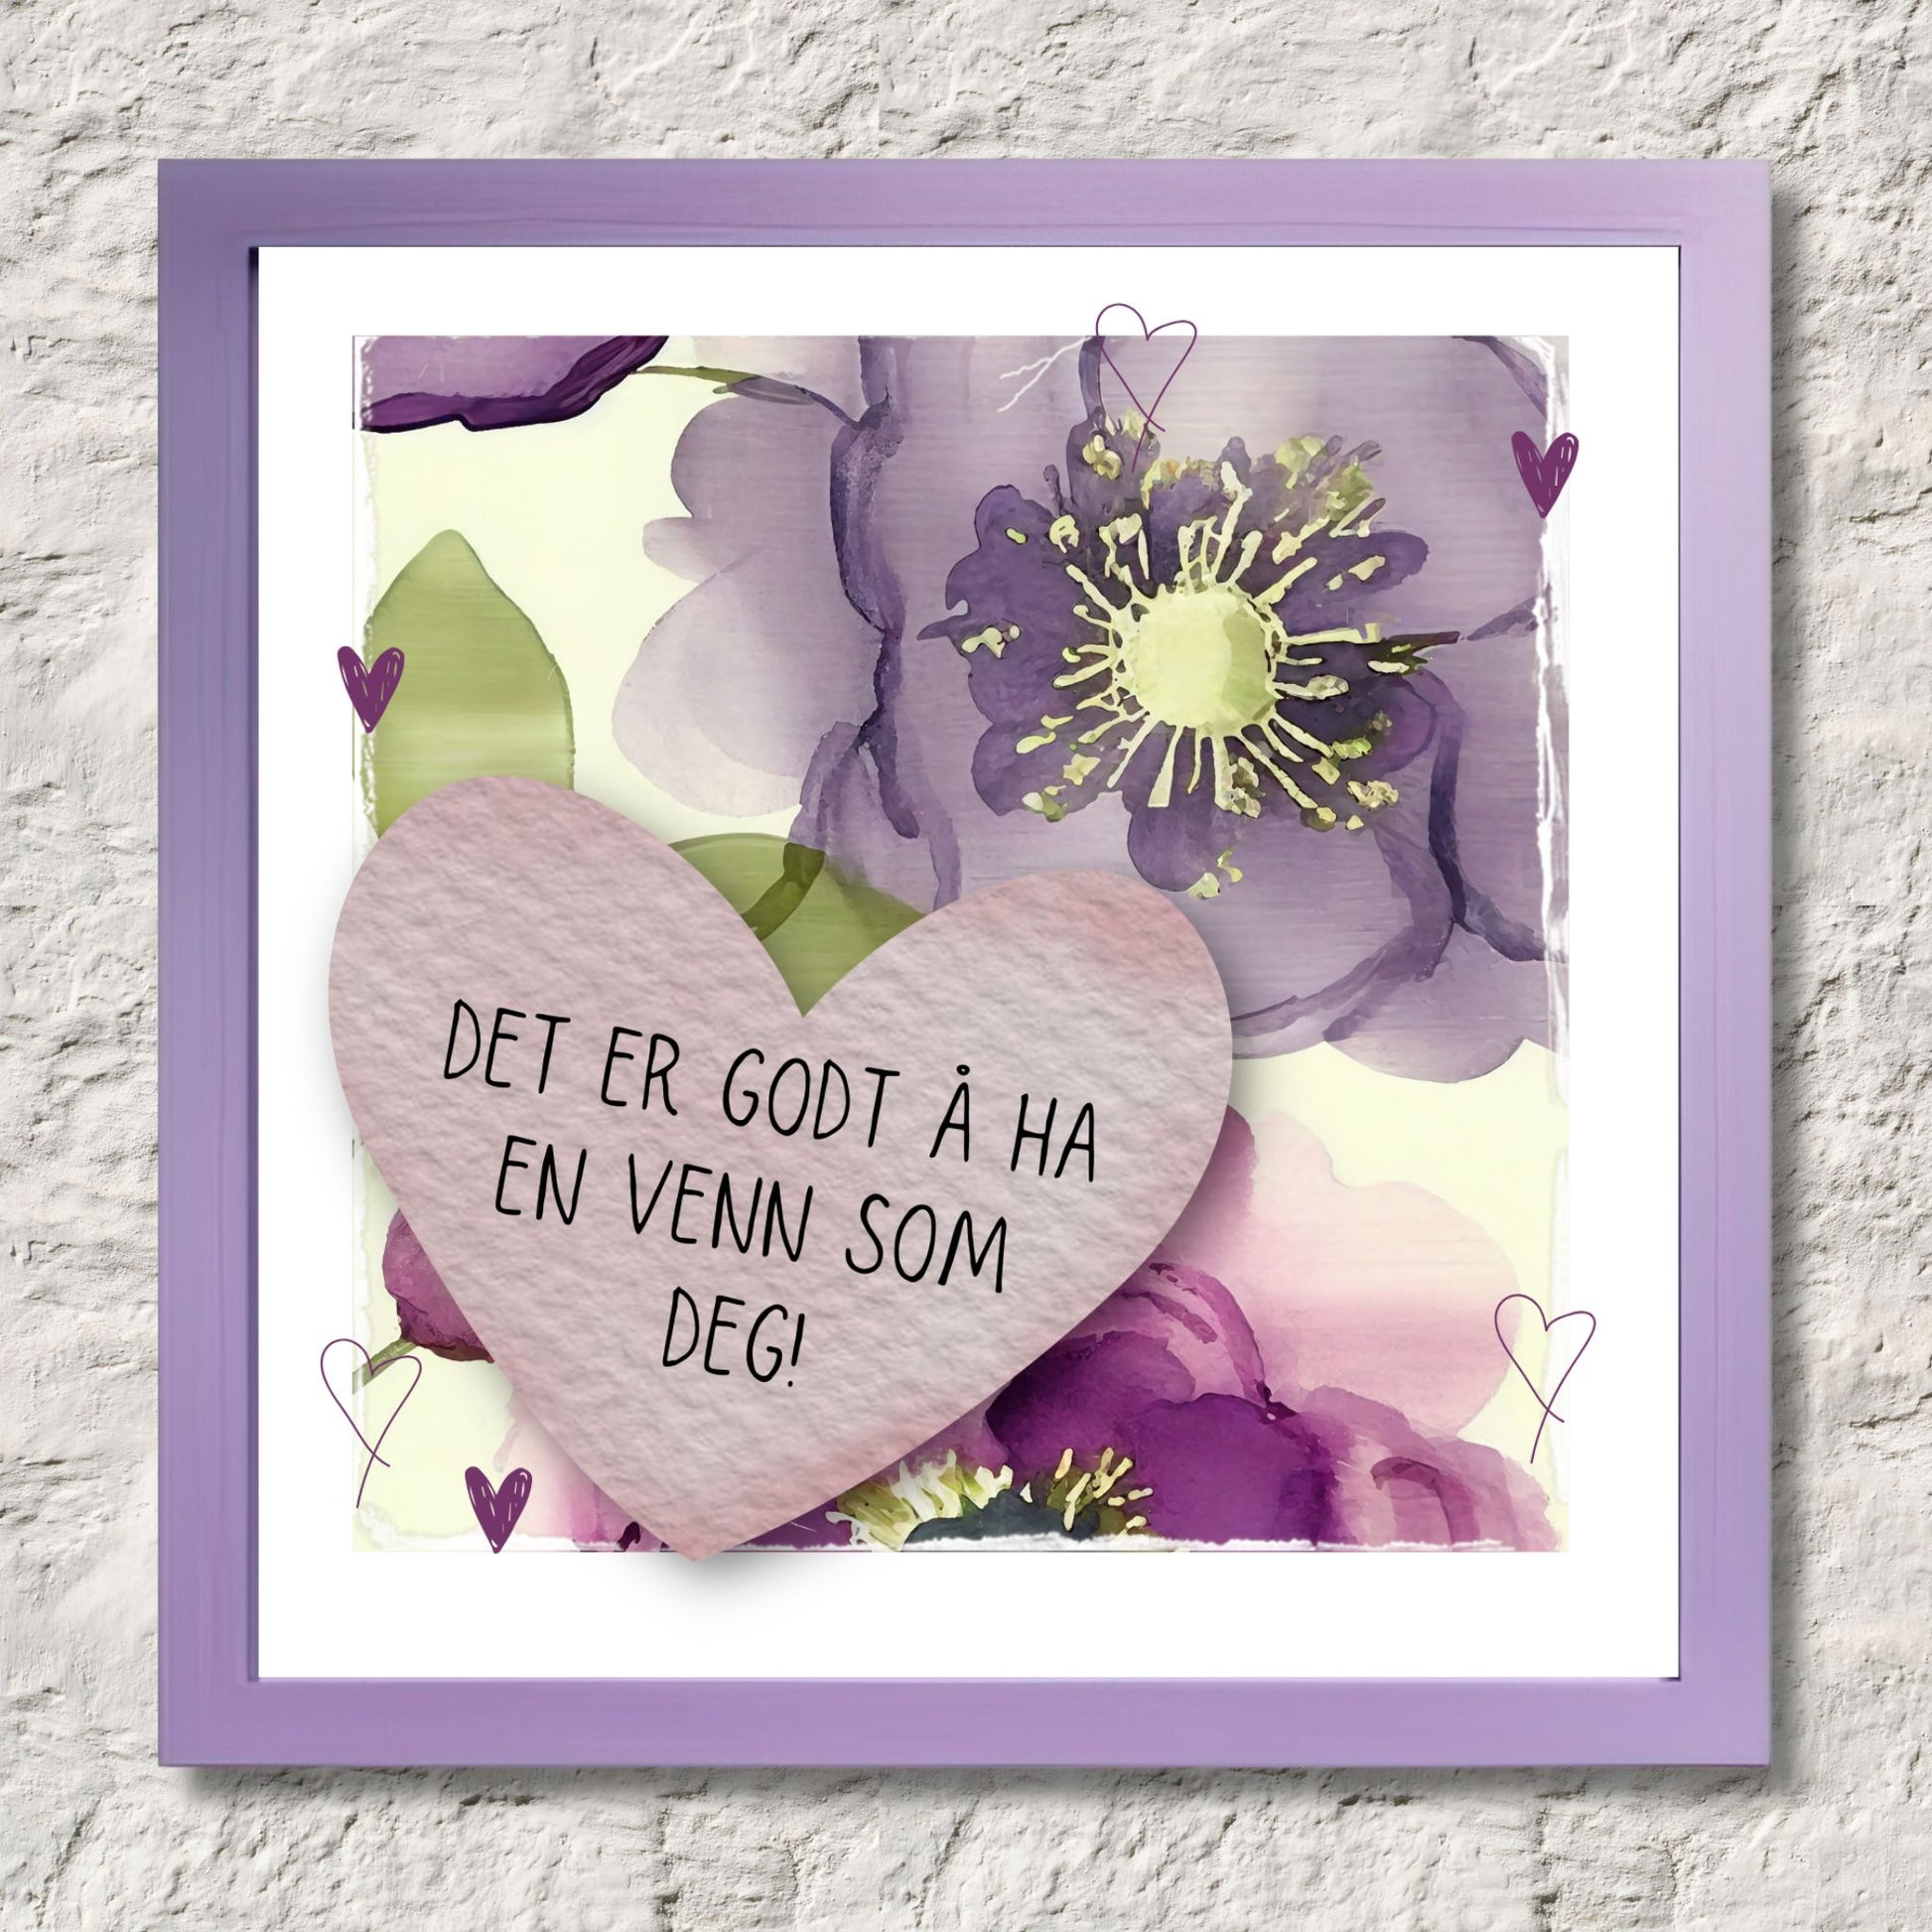 Go'ord plakat med et lilla hjerte med teksten "Det er godt å ha en venn som deg" på en bakgrunn med blomstermotiv i lilla, burgunder og grønt. Illustrasjon som viser plakat i ramme.